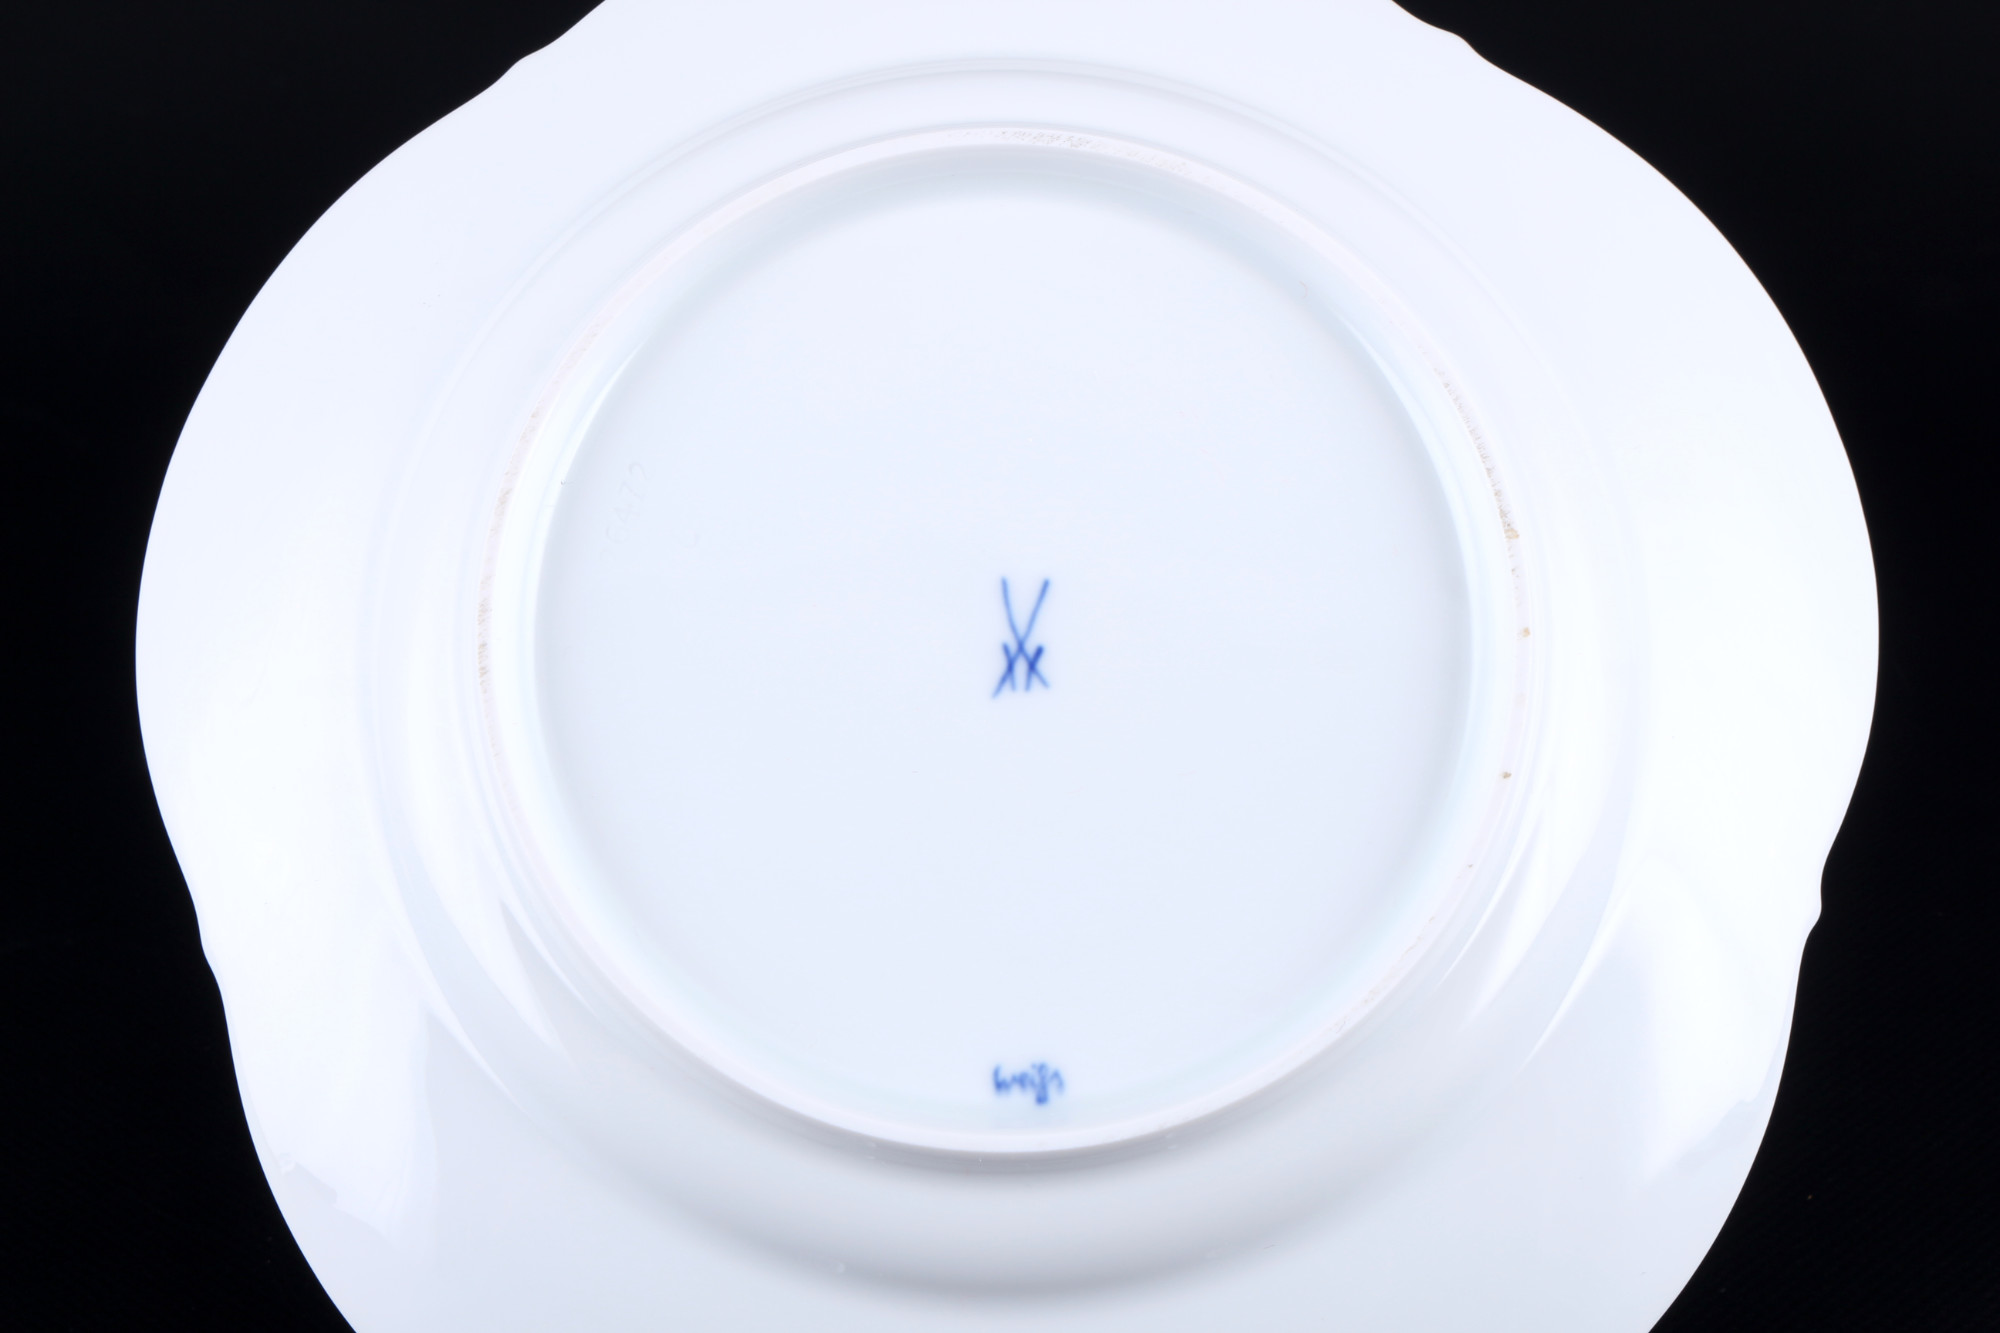 Meissen Large Neckline Relief 12 dessert plates 1st choice, Kuchenteller 1.Wahl, - Image 4 of 4